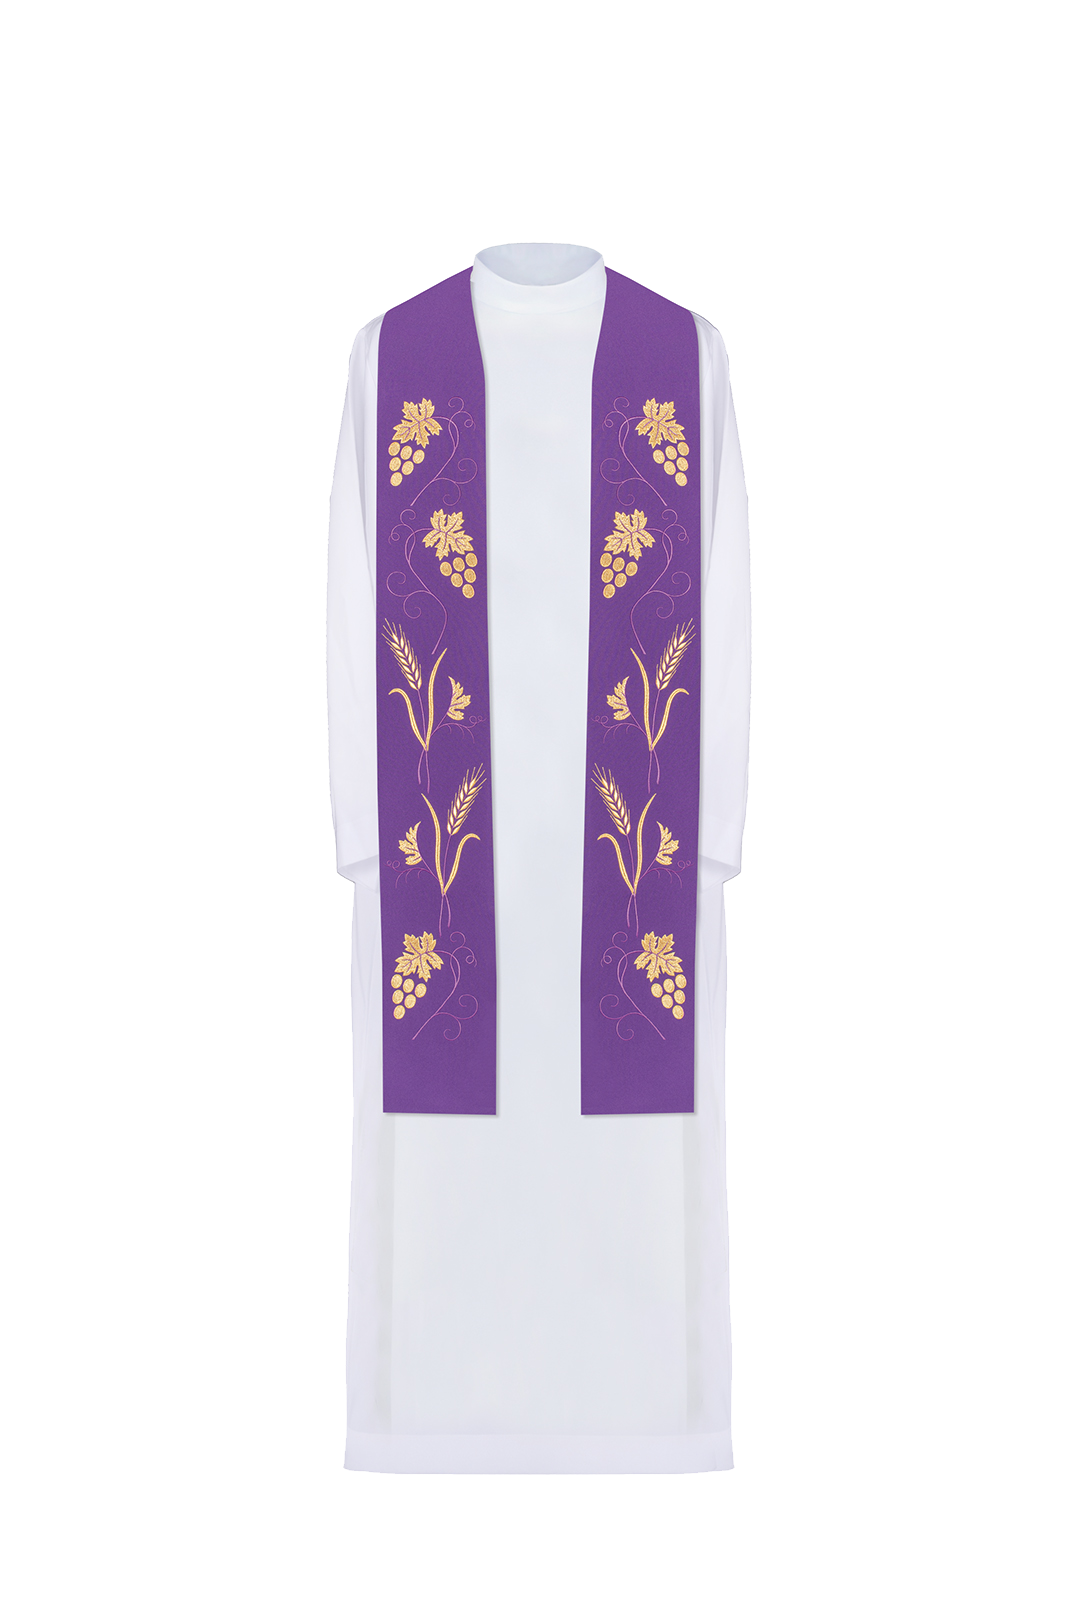 Fioletowa stuła kapłańska z bogatym haftem w winogrona i kłosy